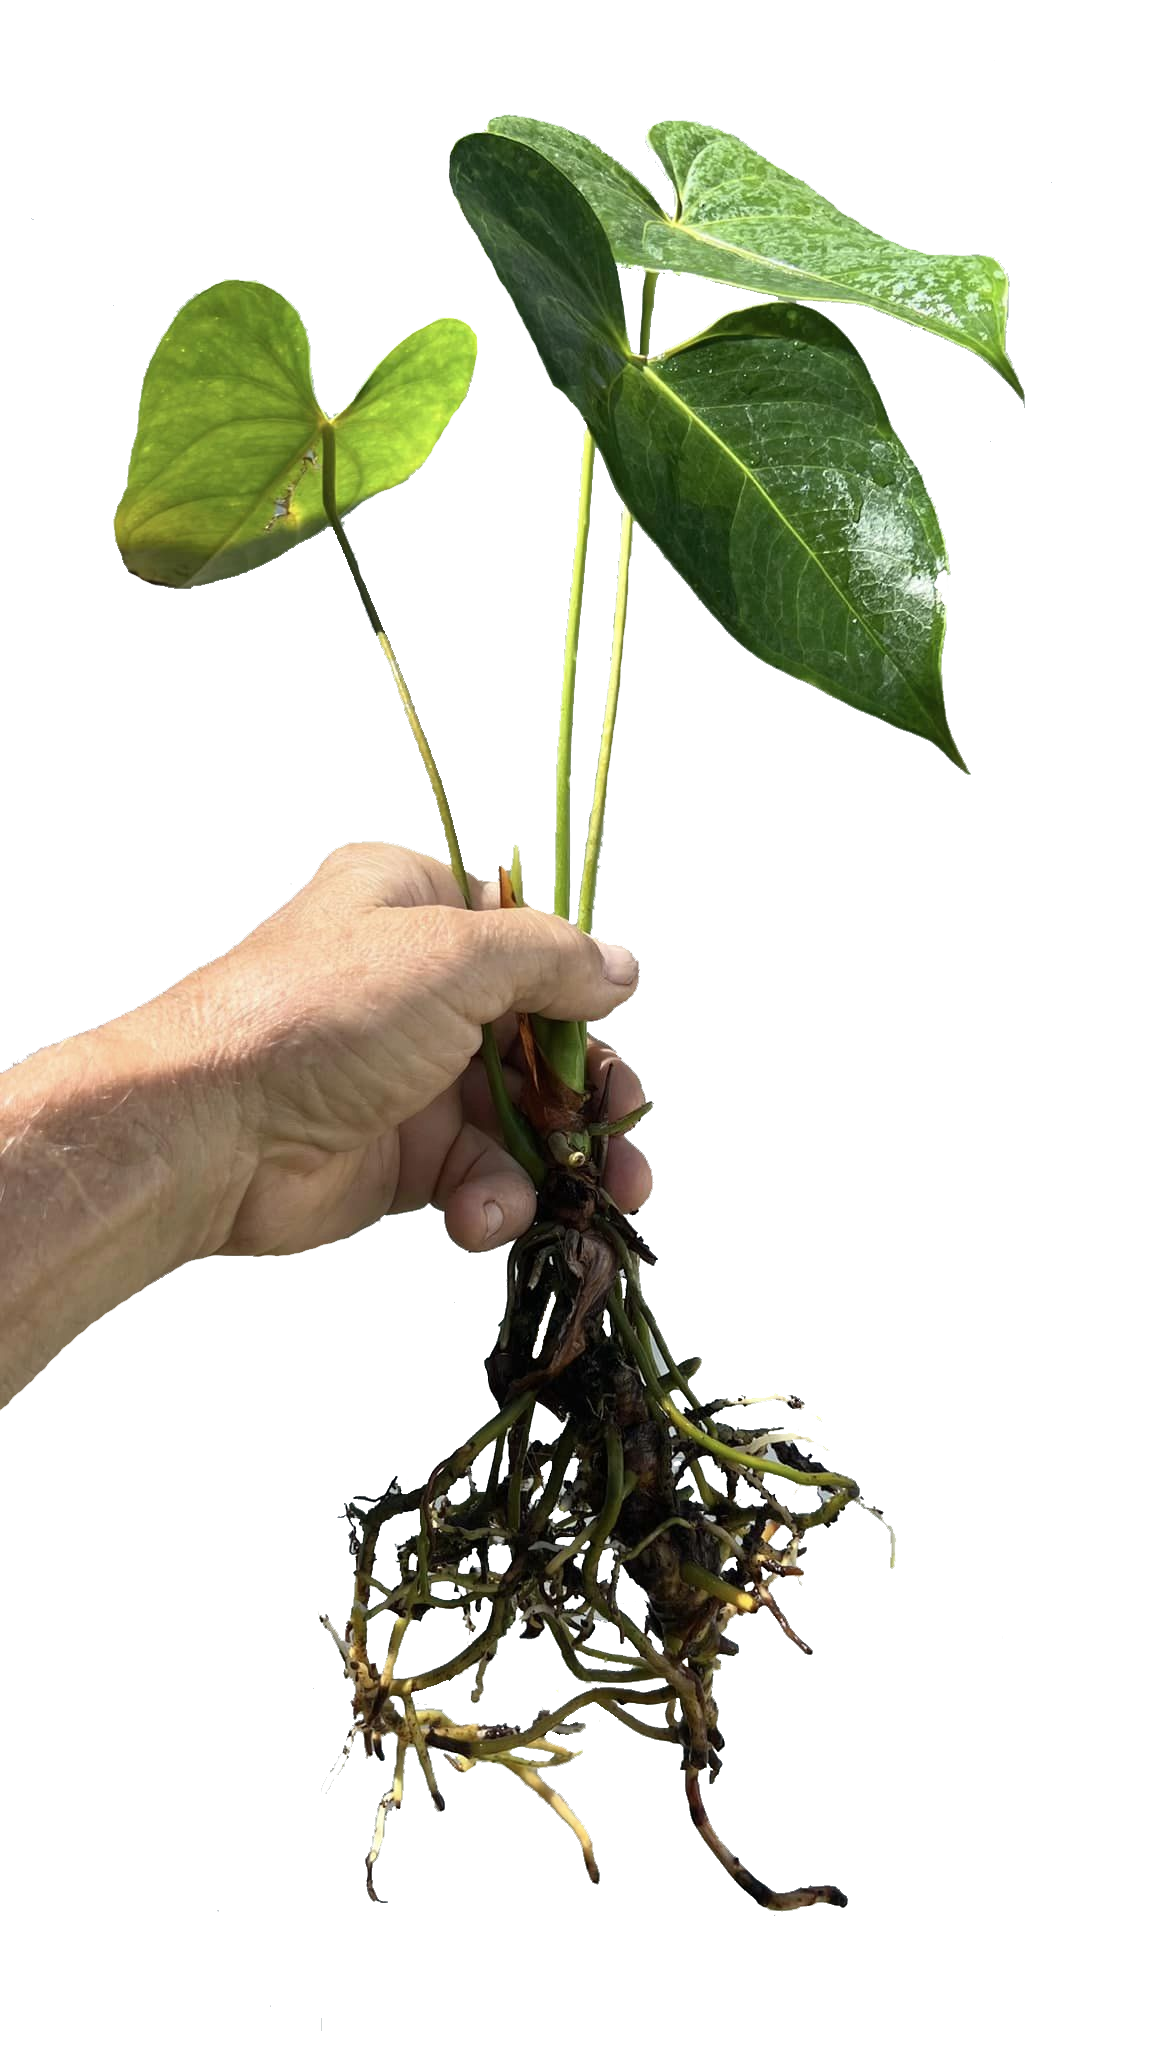 Anthurium Obake 'Spice' - Medium SubtropicalExotics